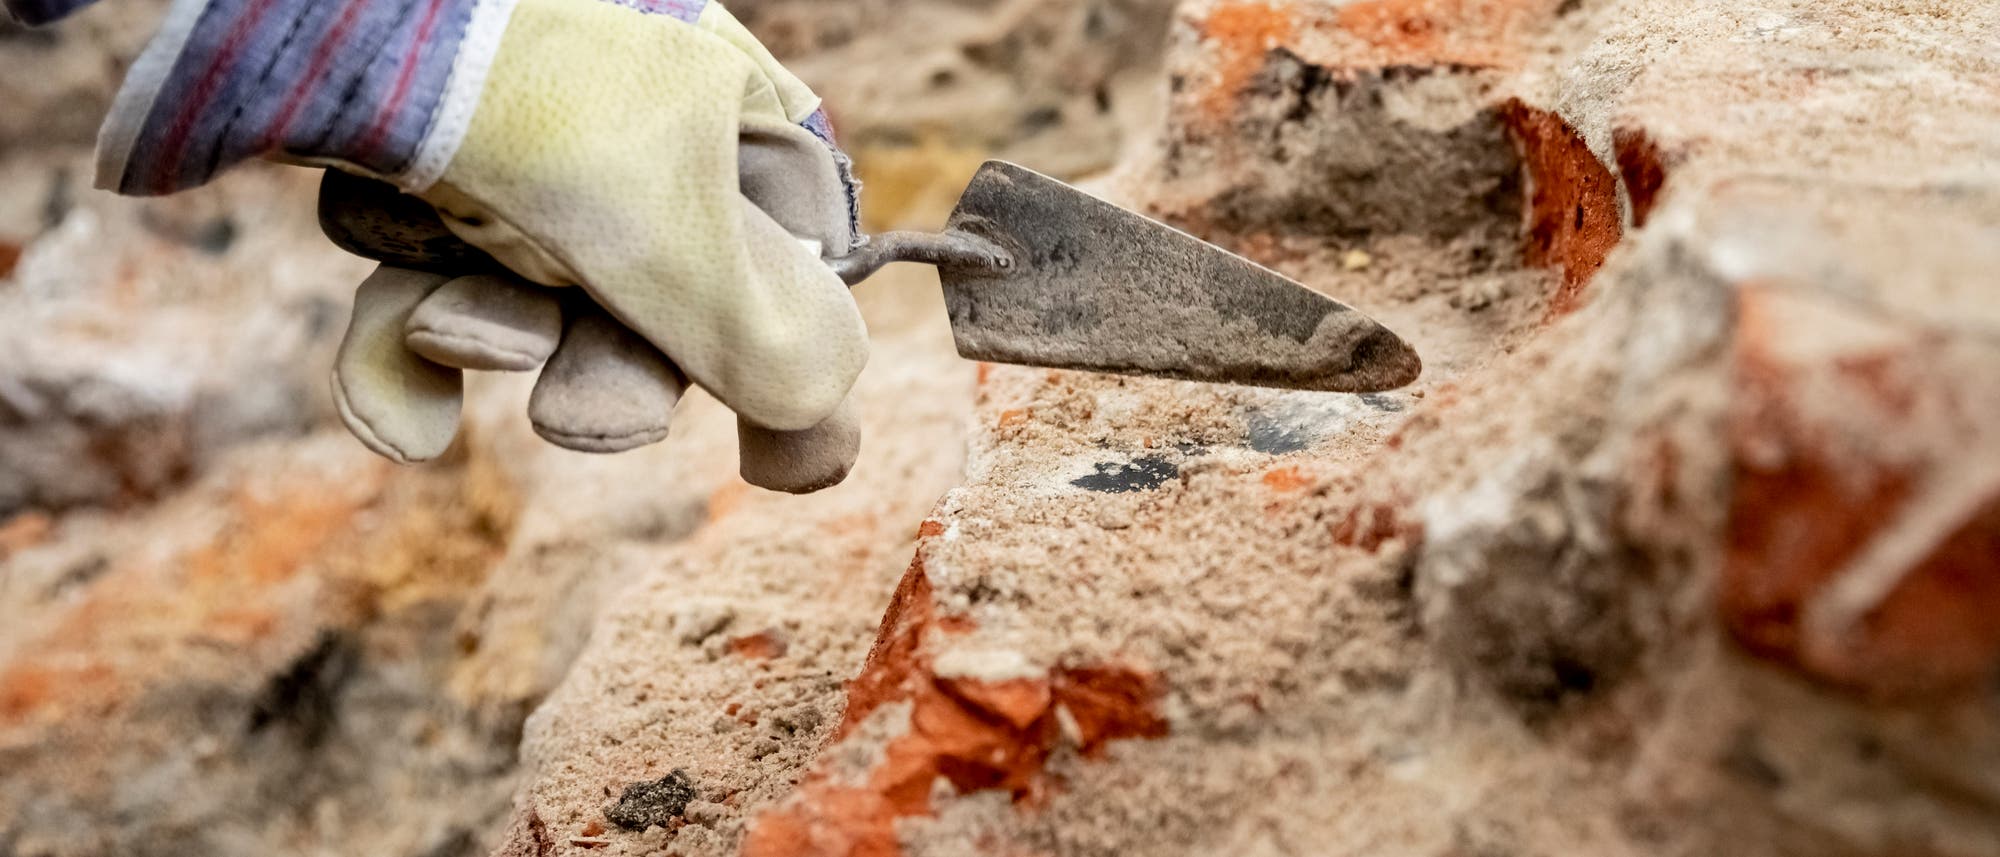 Babis Papasavvas, Restaurator und Grabungshelfer, befreit im archäologischen Grabungsfeld im Mühlendamm am Ort des historischen Molkenmarktes mit einer Kelle Steine von Sand und Schutt